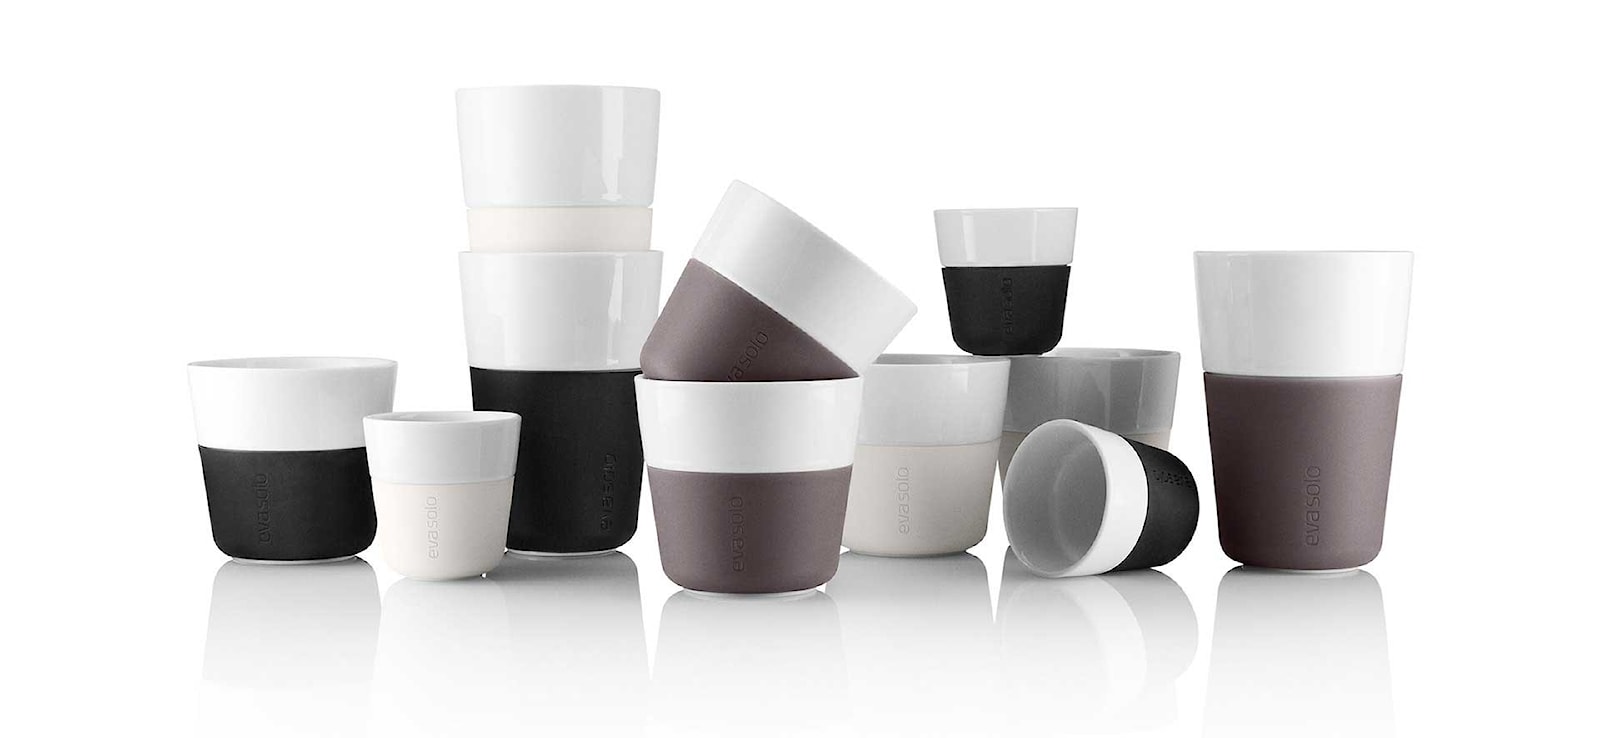 Porcelanowe kubki do kawy, espresso i latte - Eva Solo - zdjęcie od NordicStudio - Homebook